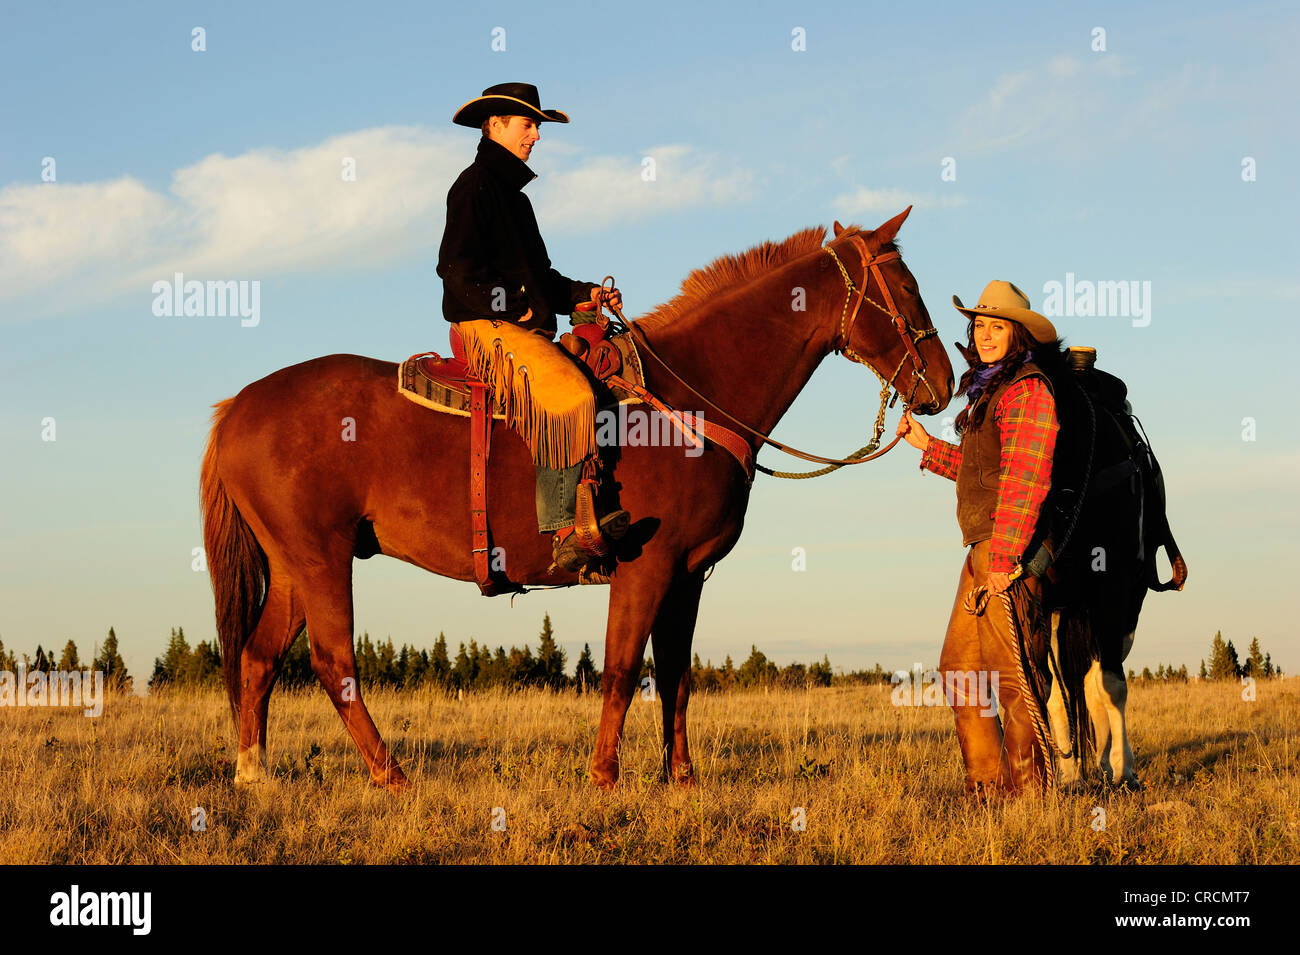 Cowboy et Cowgirl avec les chevaux dans le soleil du soir, Saskatchewan, Canada, Amérique du Nord Banque D'Images